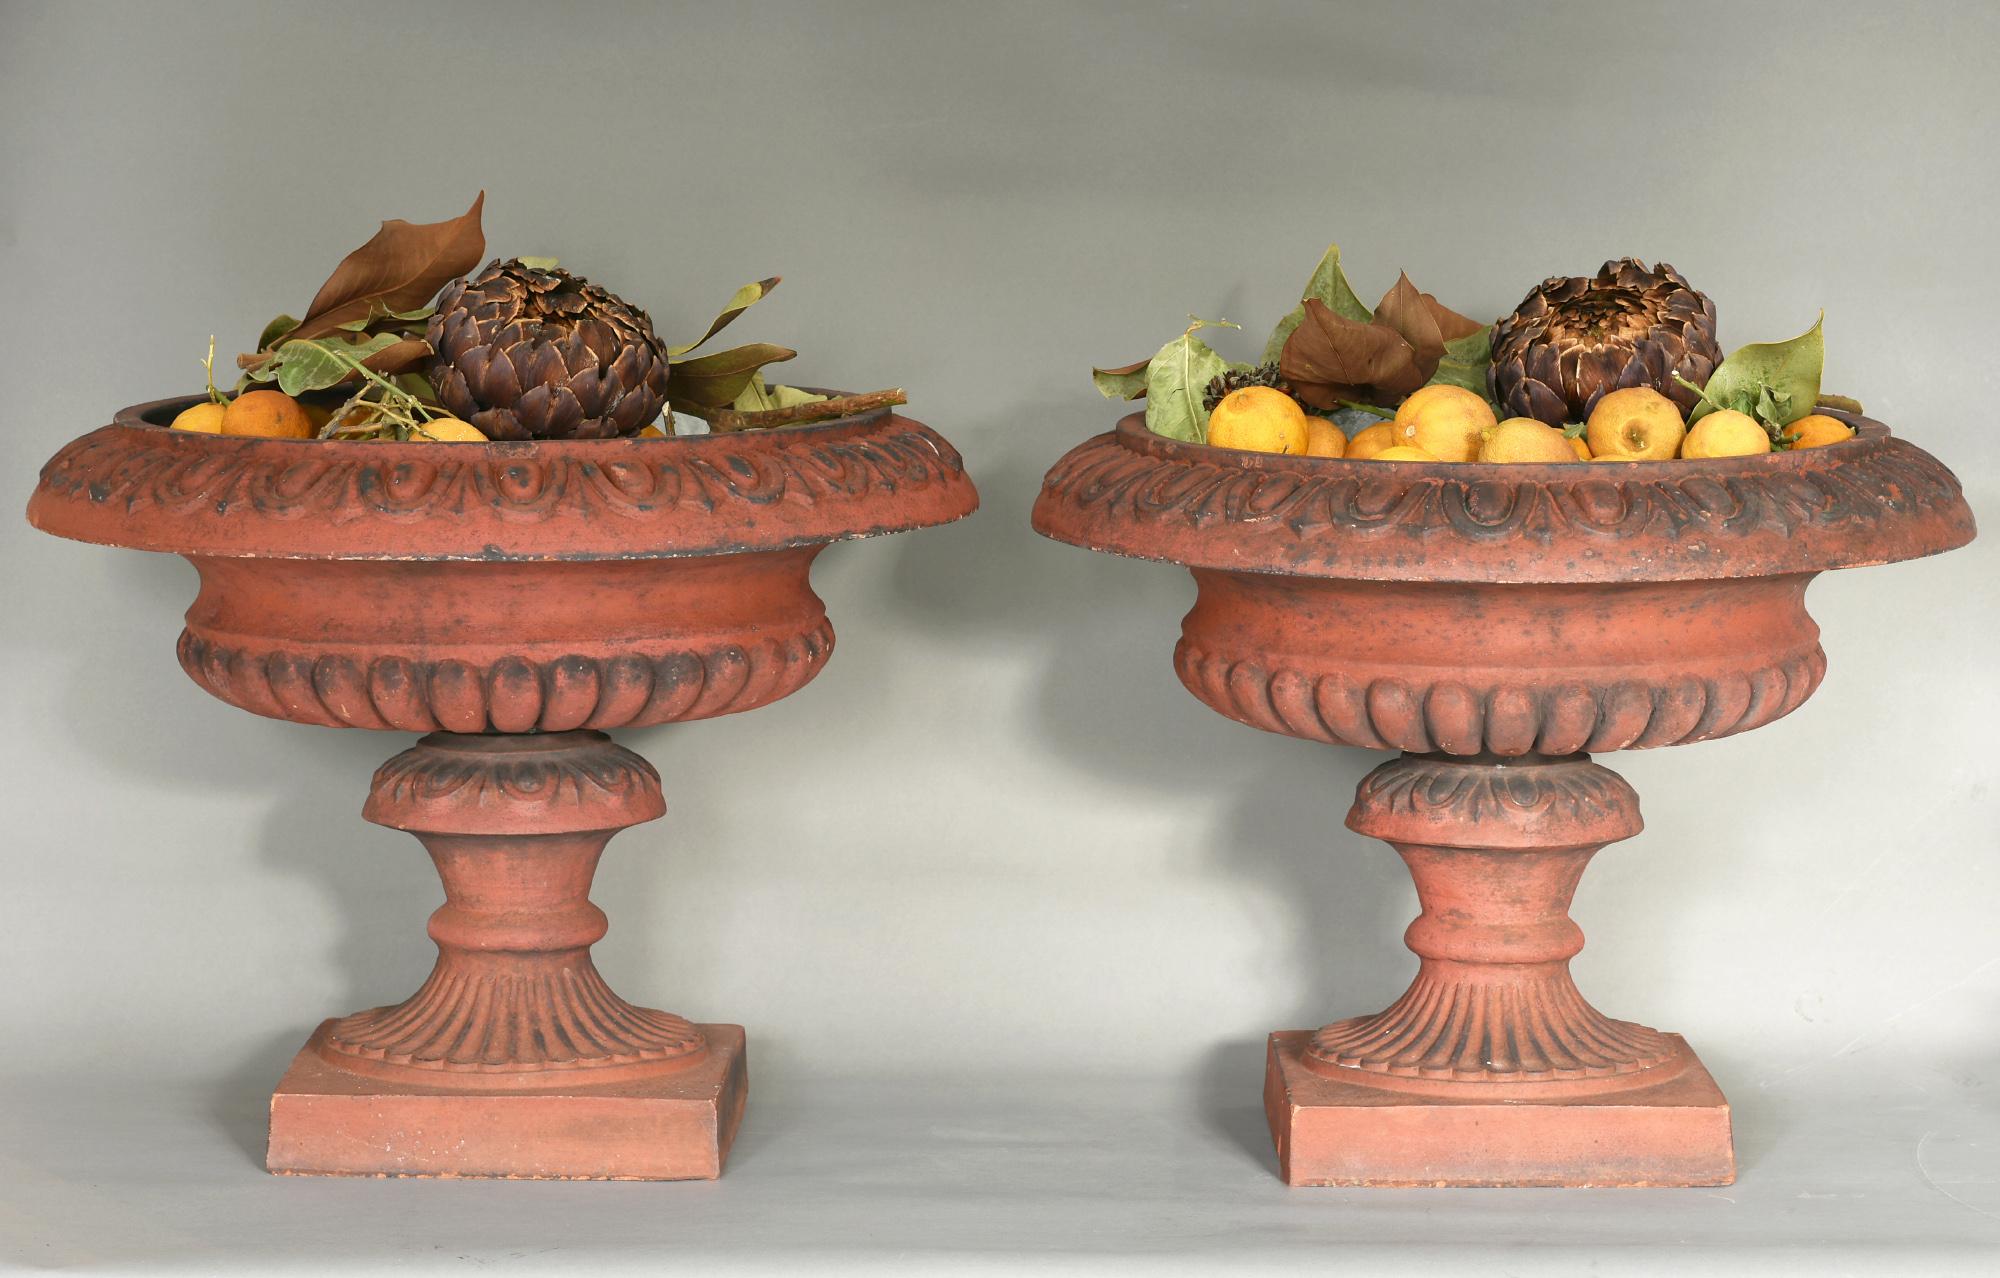 Ein besonders schönes Paar Terrakotta-Vasen aus England, um 1900.
Das Paar ist sehr schön ausgearbeitet und besteht aus zwei Teilen, wie man auf den Bildern sehen kann. Sie sind zwei sehr dekorative Objekte in einem Garten, vor allem mit Blumen